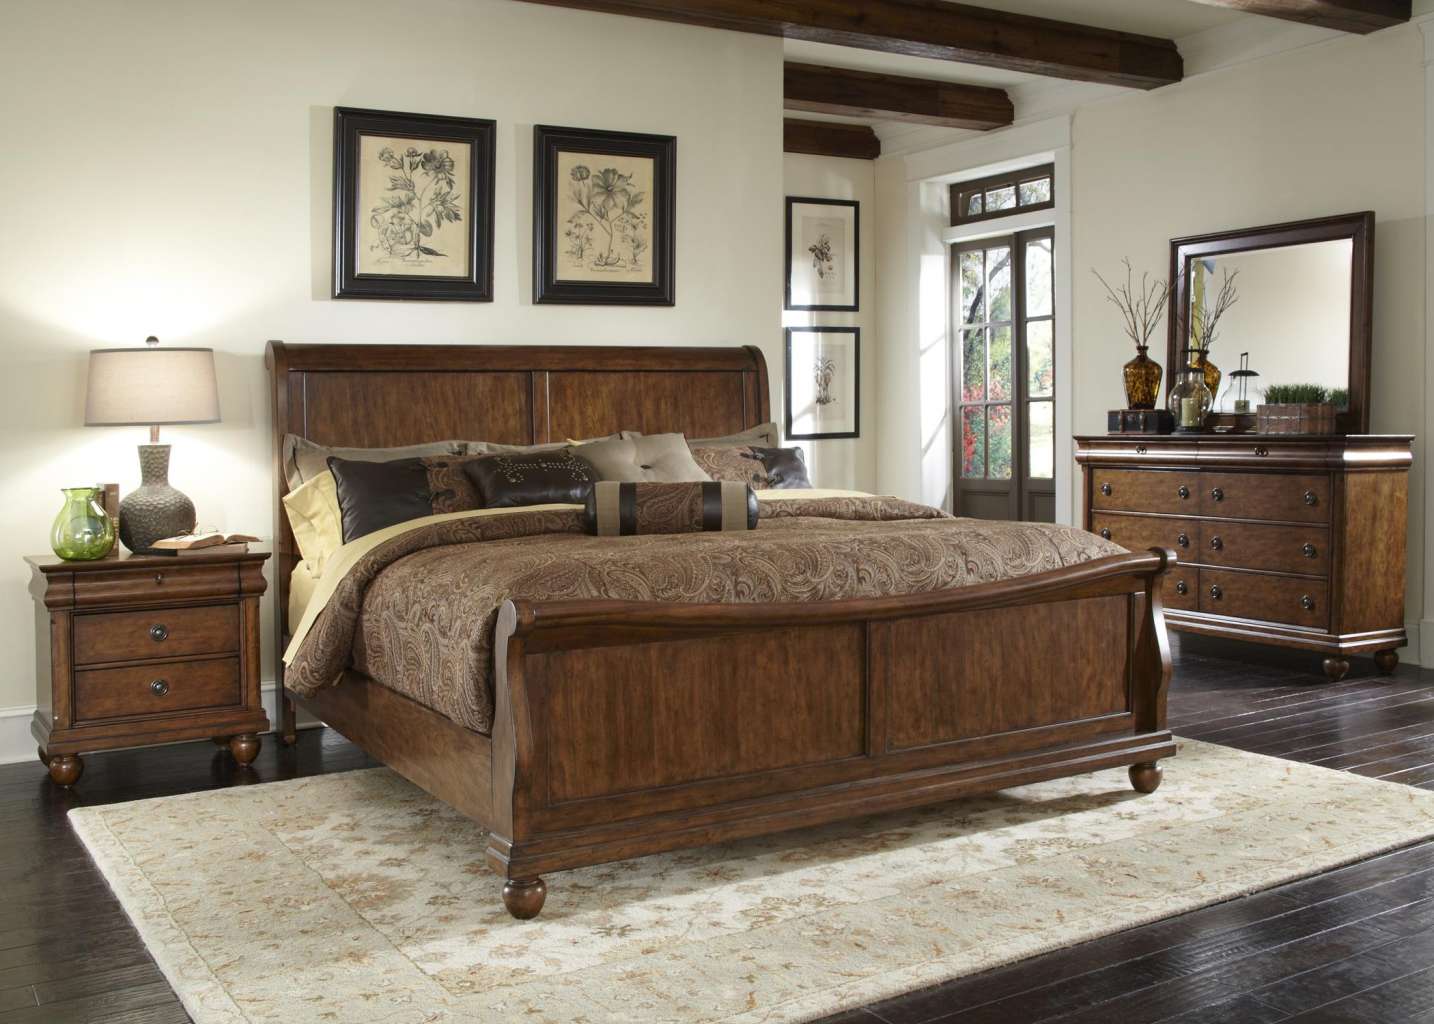 Giường ngủ gỗ đẹp tinh tế tối giản sang trọng